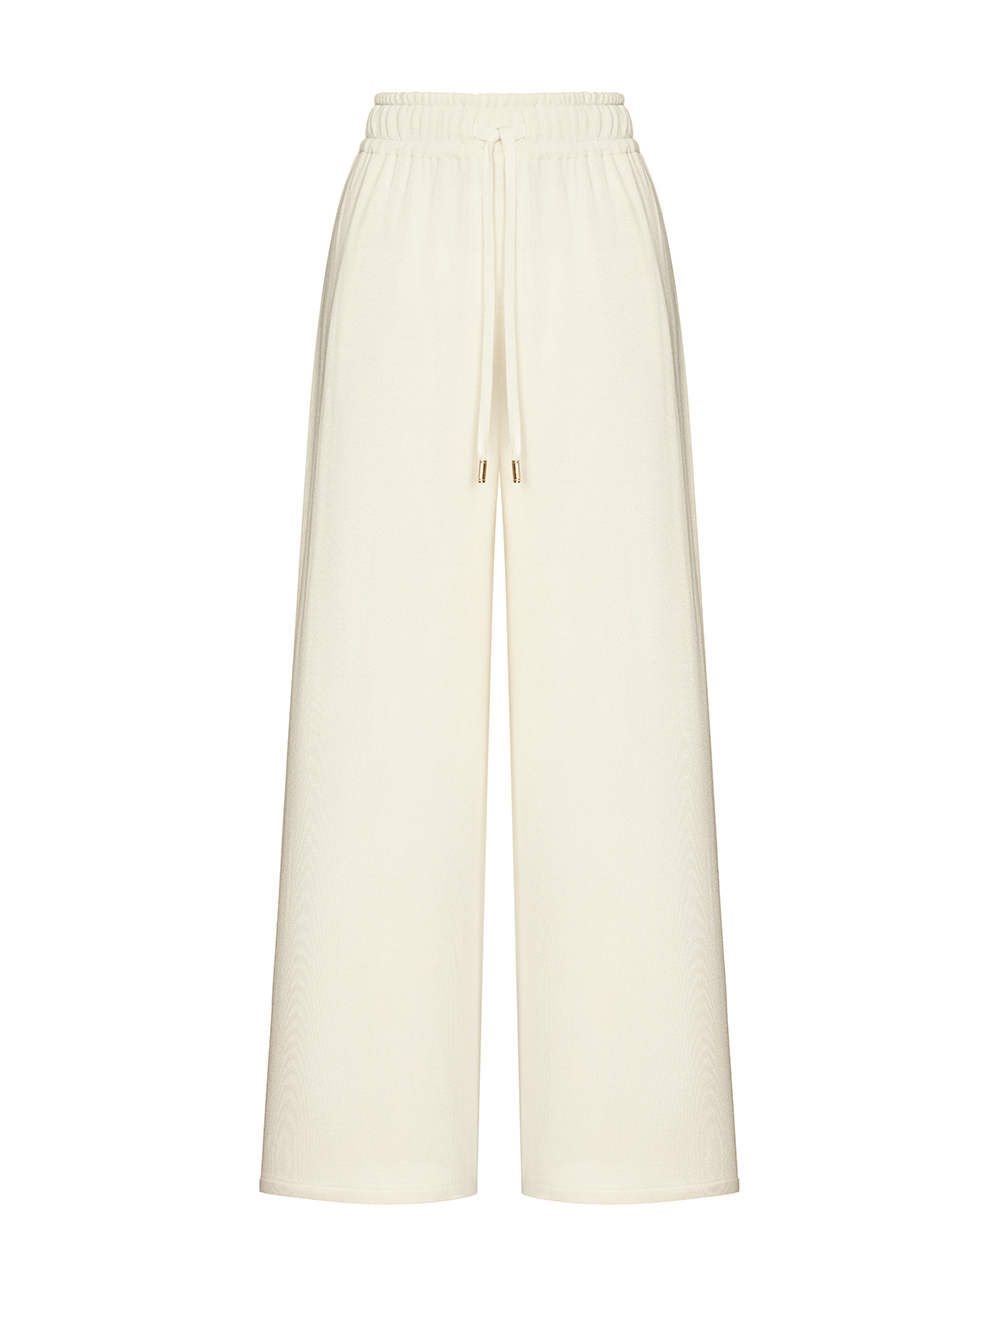 Женские брюки молочного цвета из шелка и вискозы - фото 1